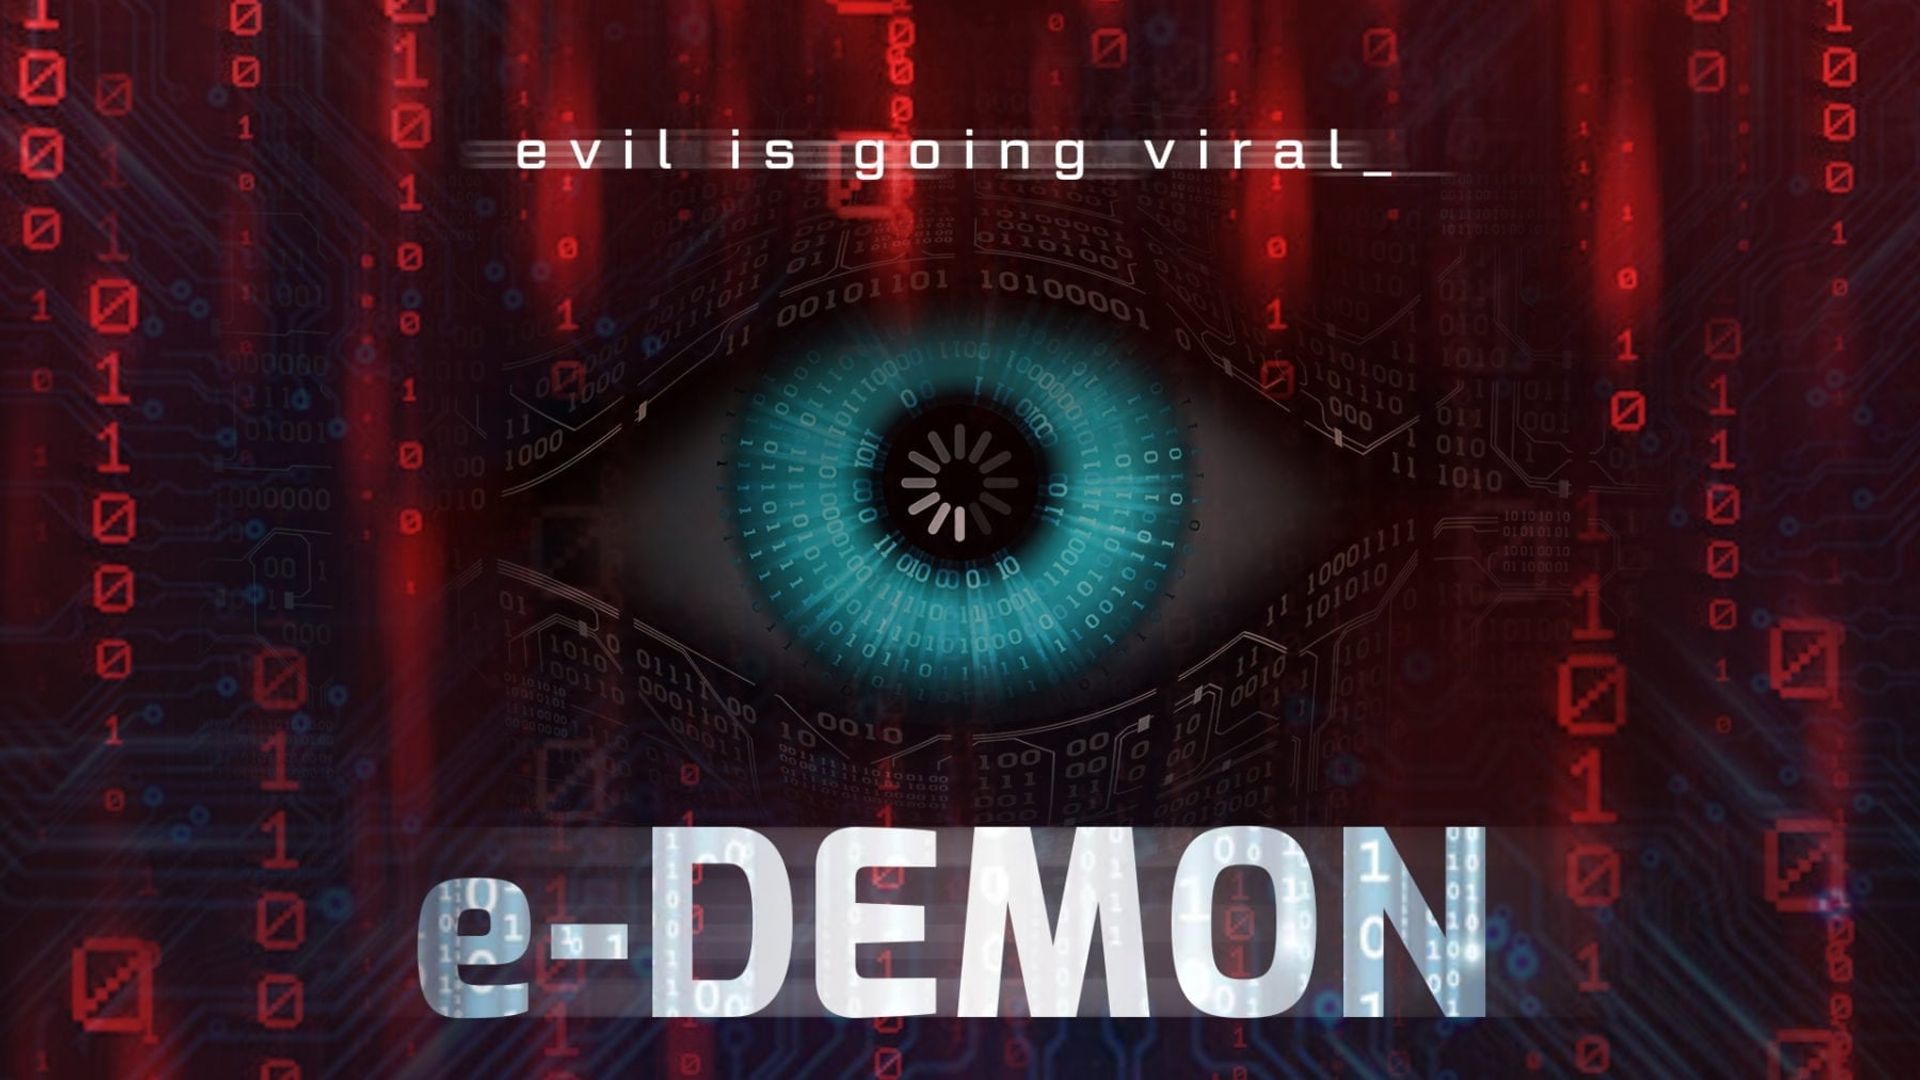 E-Demon background